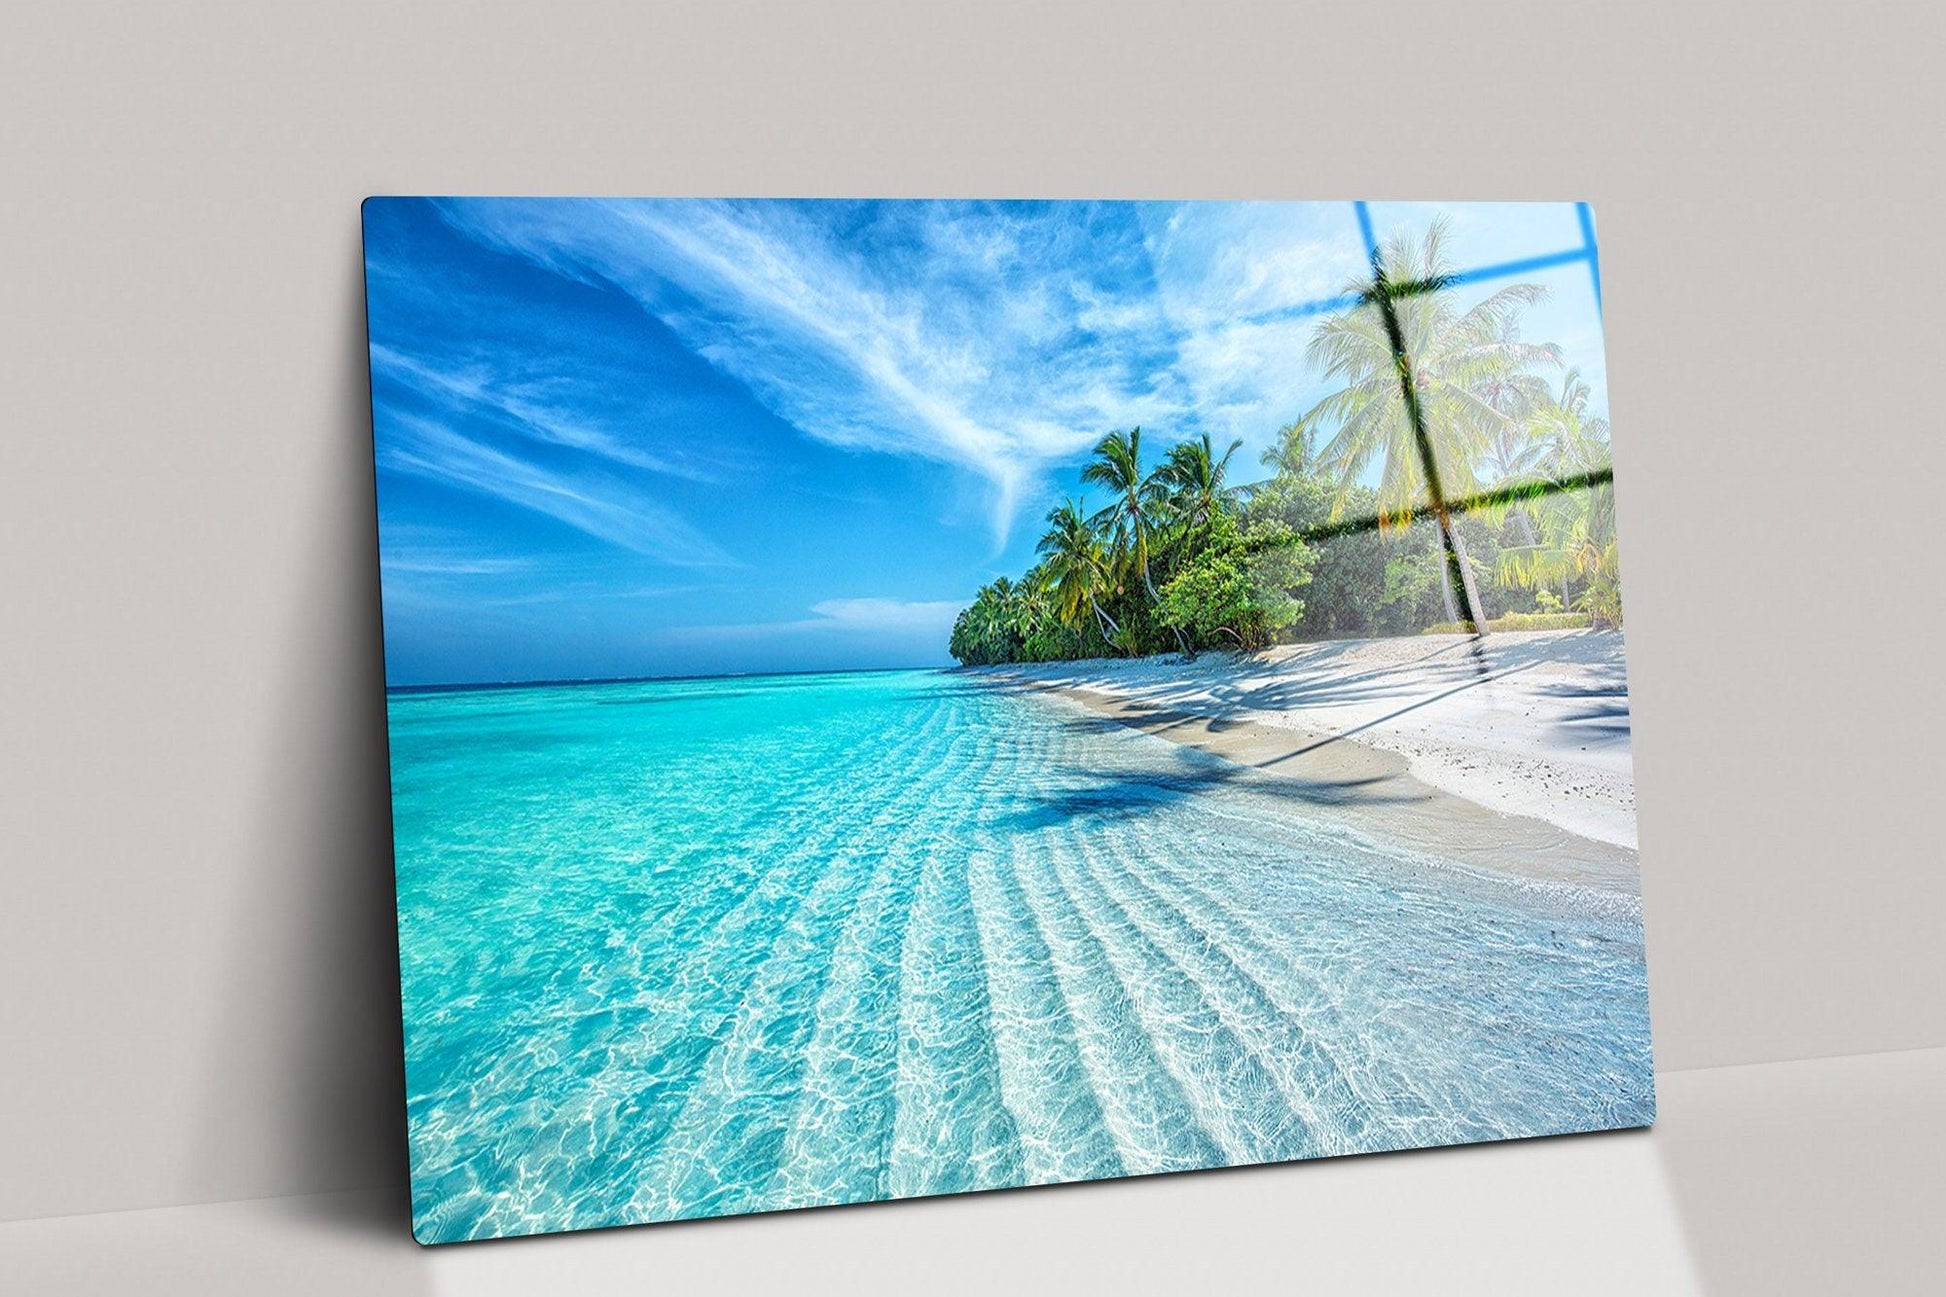 https://trendiart.com/cdn/shop/products/tropical-ocean-beach-landscape-tempered-glass-wall-art-or-ocean-wall-decor-tropical-beach-glass-printing-wall-art-sea-canvas-wall-art-trendiart-1.jpg?v=1668296006&width=1946